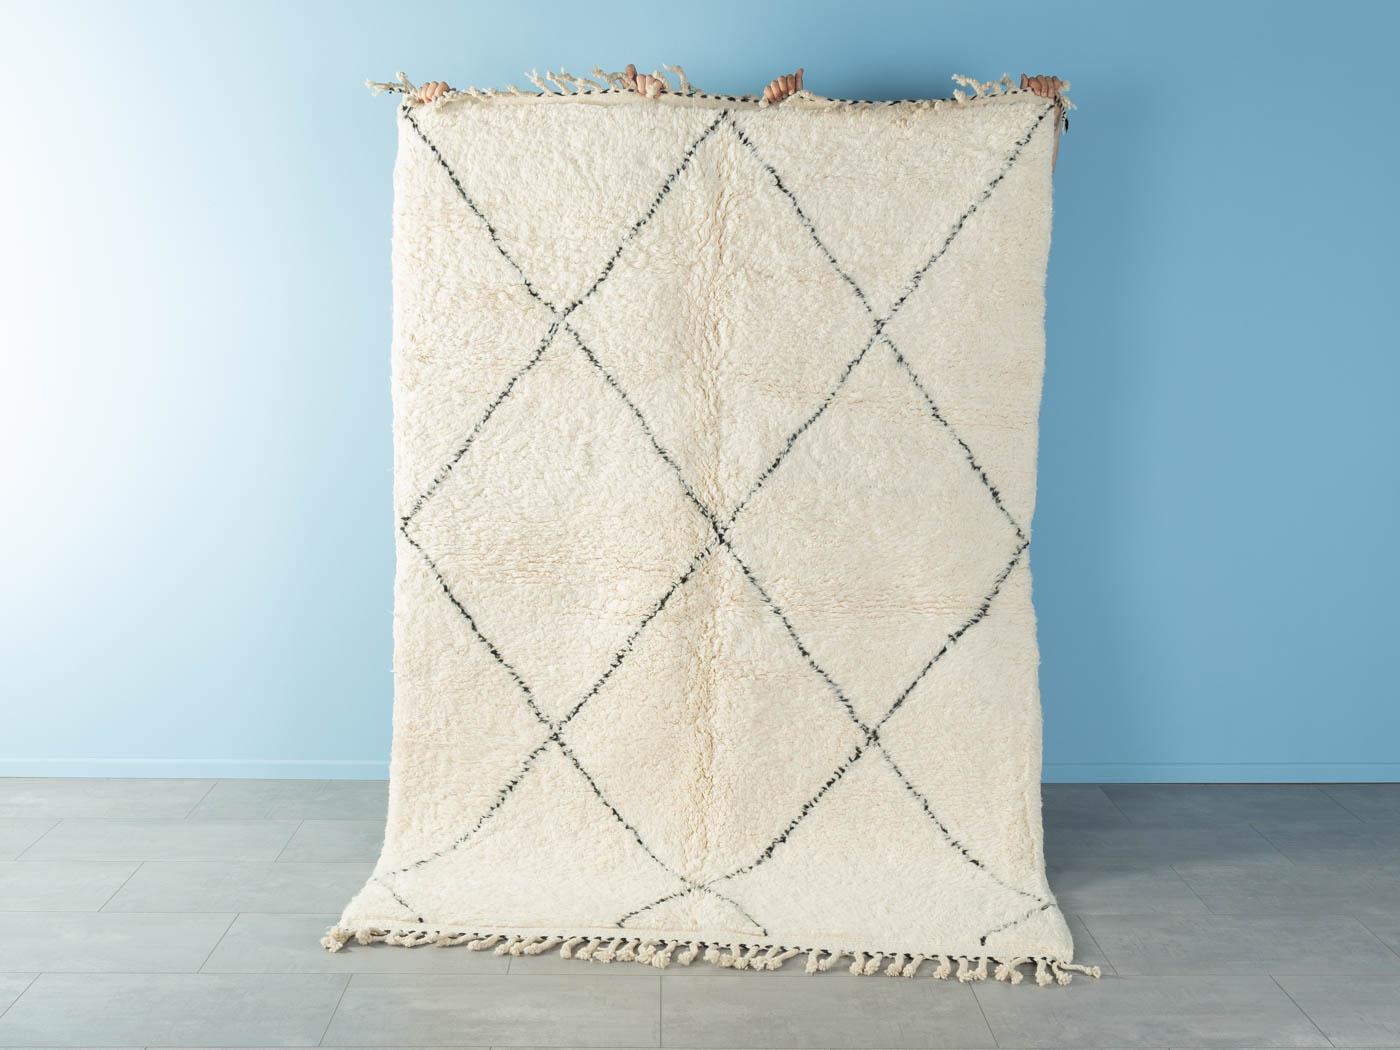 Midi Beni ist ein moderner Teppich aus 100% Wolle - dick und weich, angenehm zu tragen. Unsere Berberteppiche werden von Amazigh-Frauen im Atlasgebirge handgewebt und handgeknüpft. Diese Gemeinschaften stellen schon seit Tausenden von Jahren